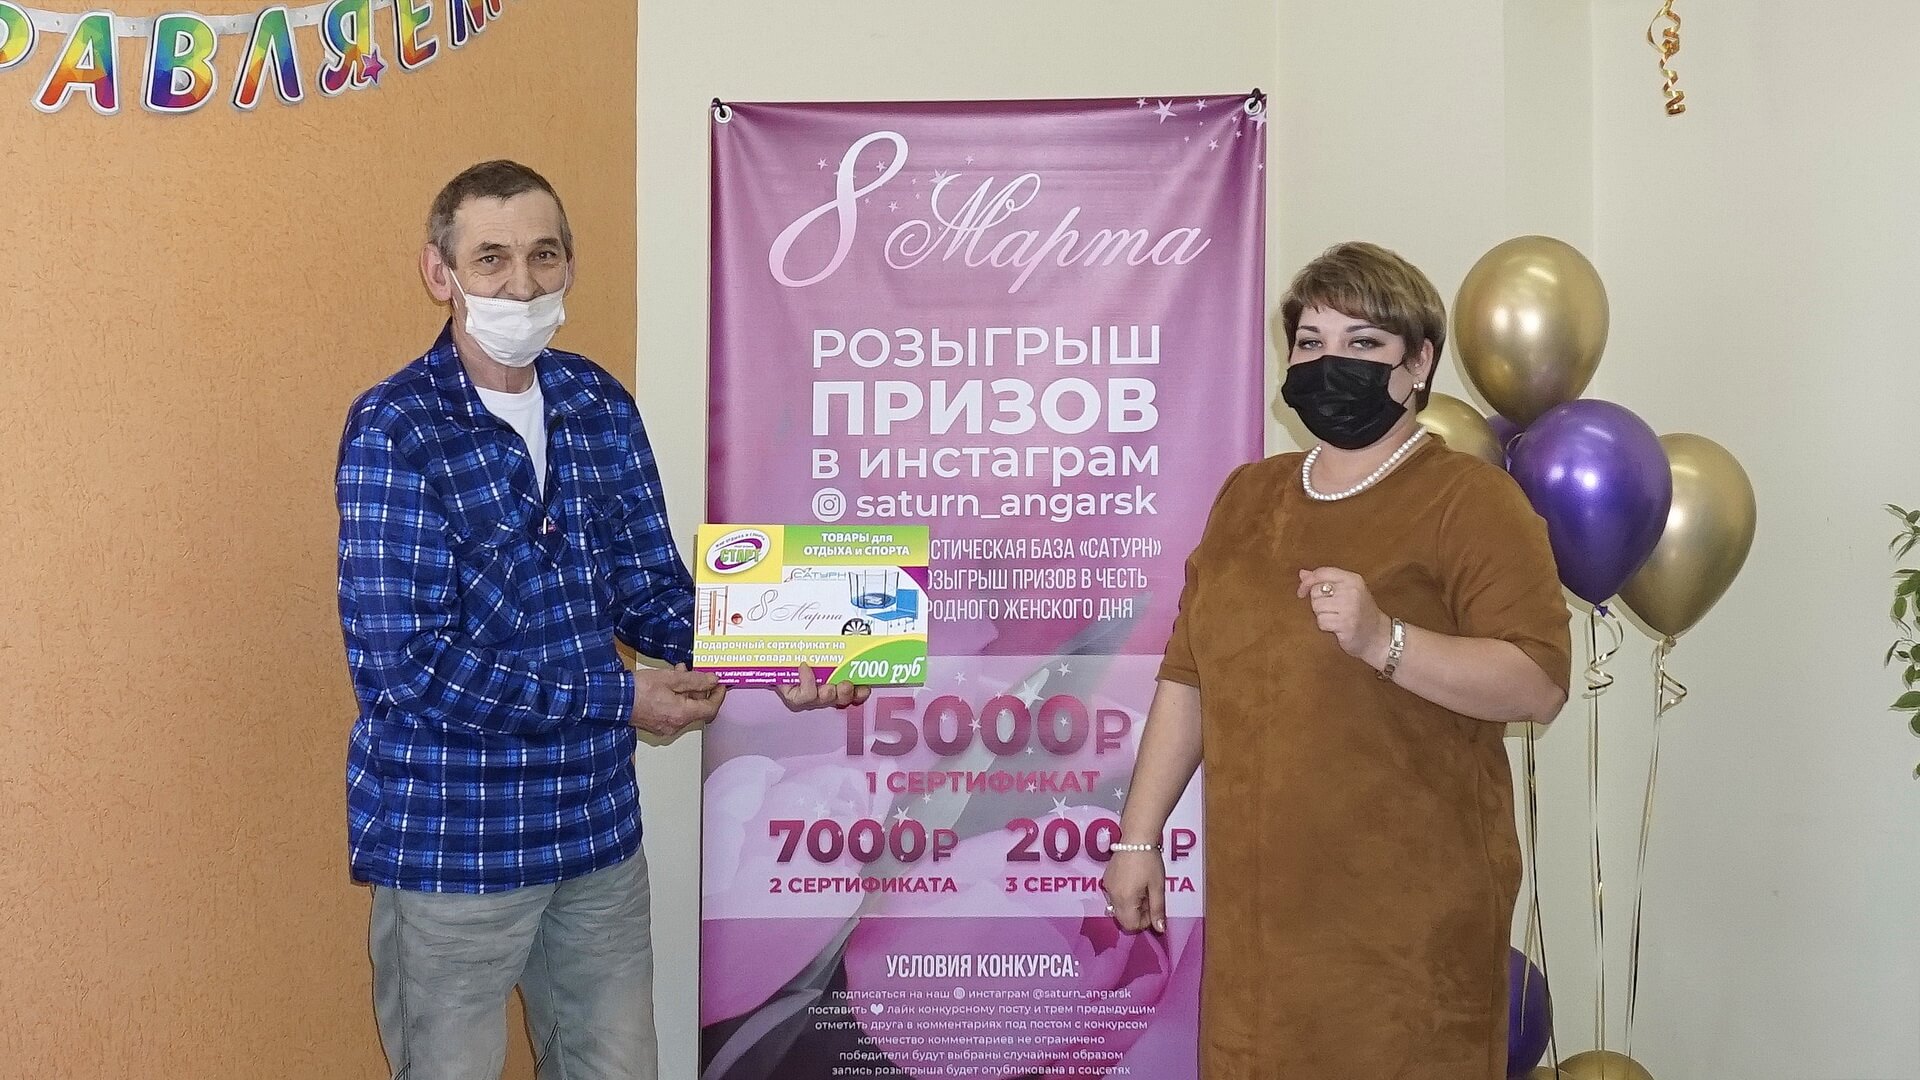 Блогер из Куйтуна Игорь Владимирович получает приз на 7000 рублей